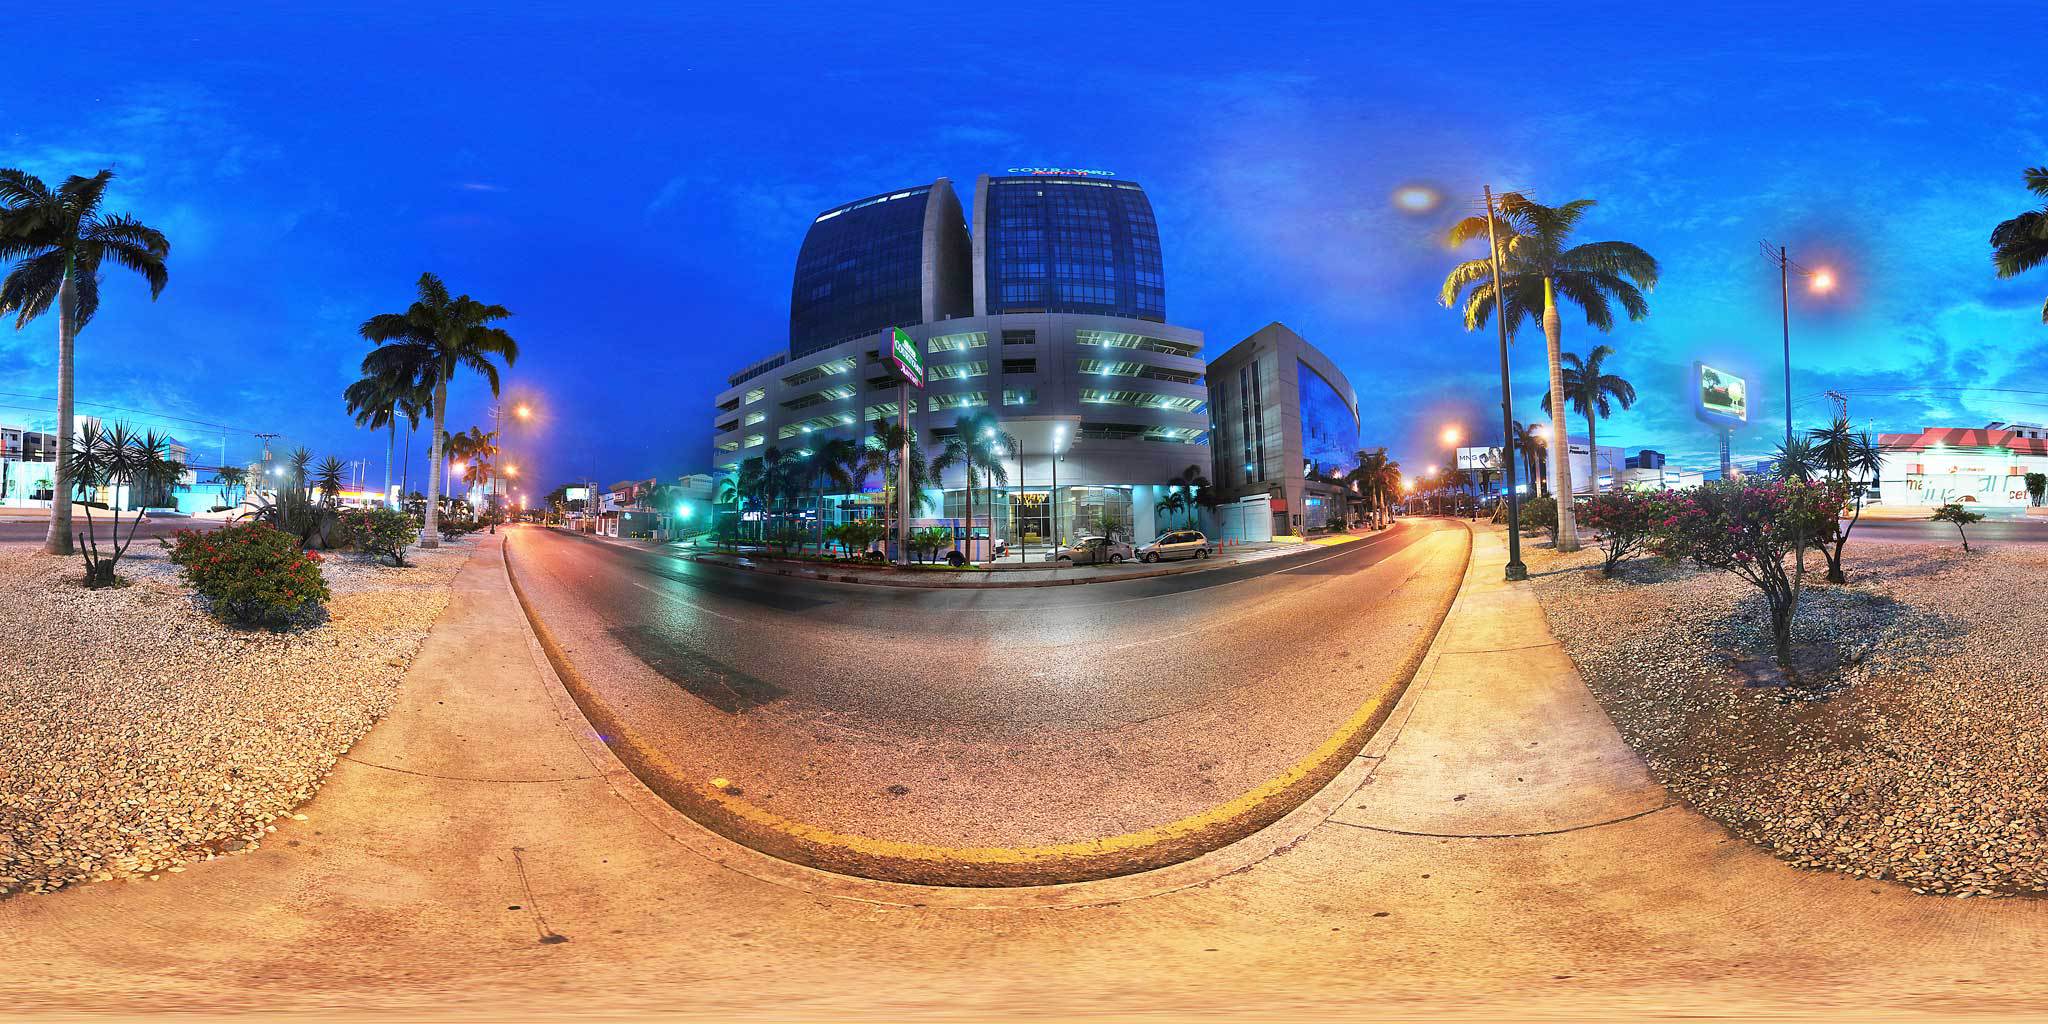 Photo of Courtyard Guayaquil, Guayaquil, Ecuador